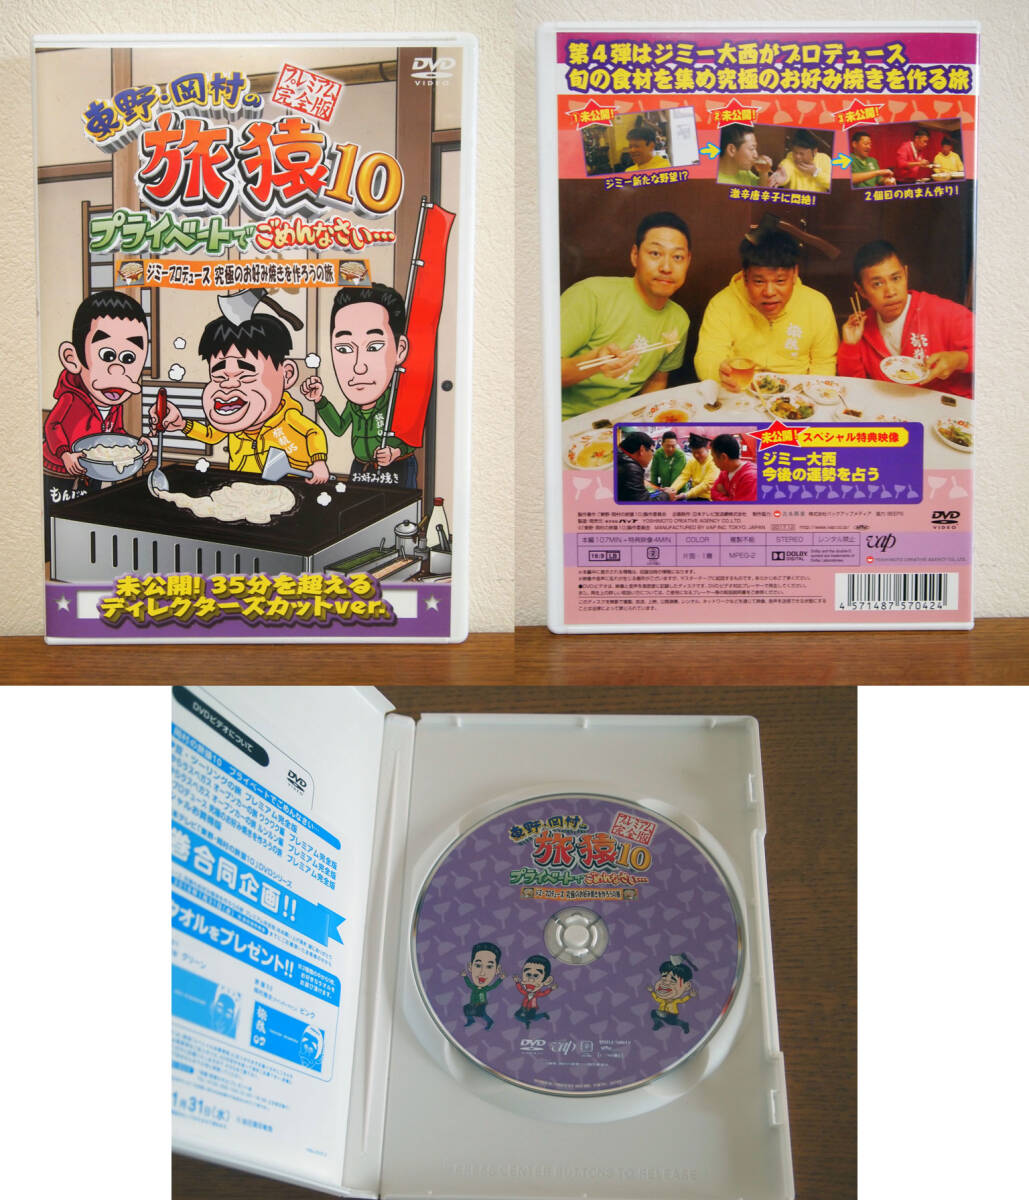 東野・岡村の旅猿10 プライベートでごめんなさい… プレミアム完全版 DVD セル版 5巻セット_画像5